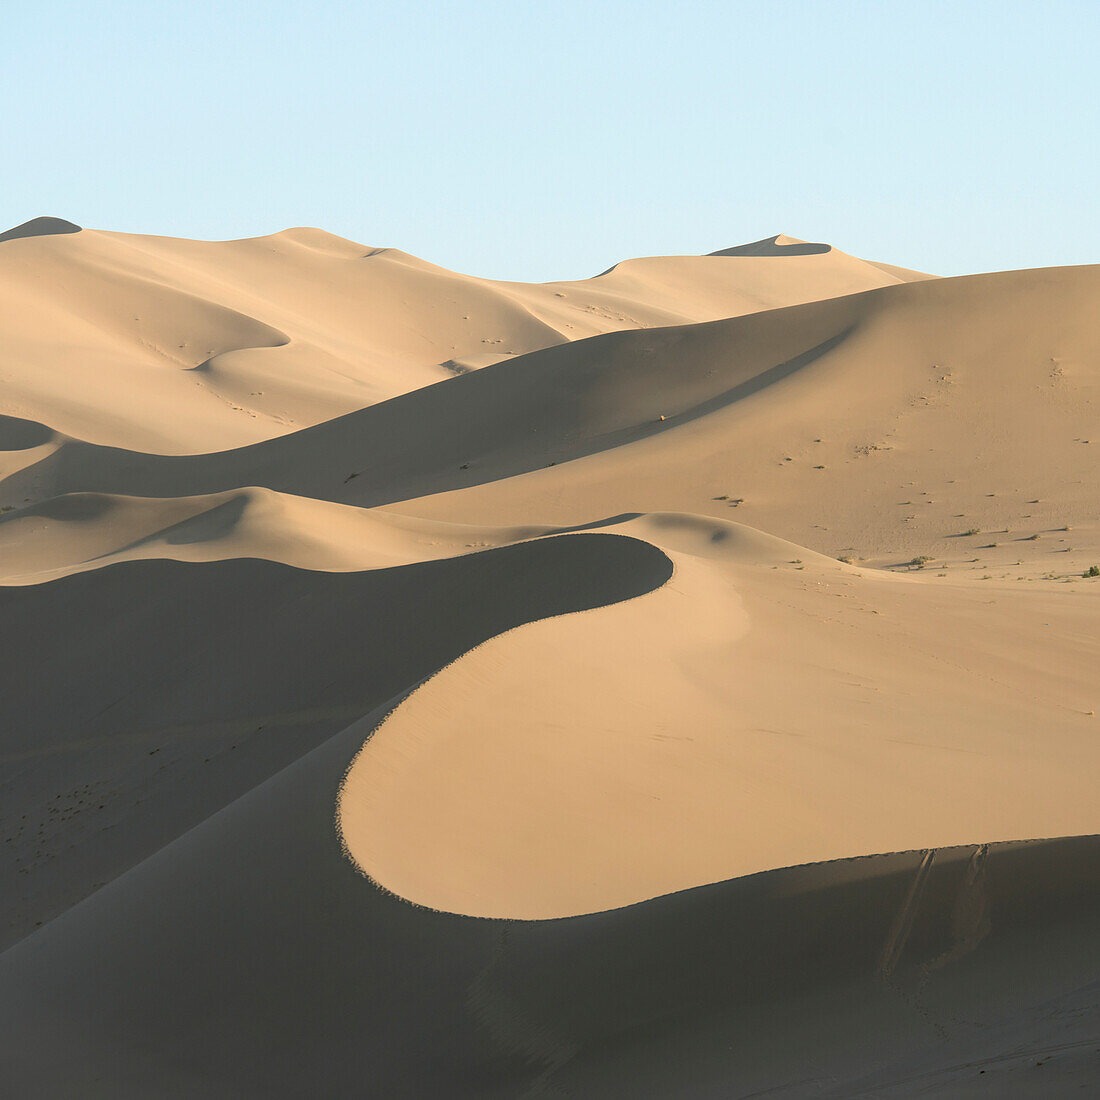 Desert landscape of sand slopes and ridges